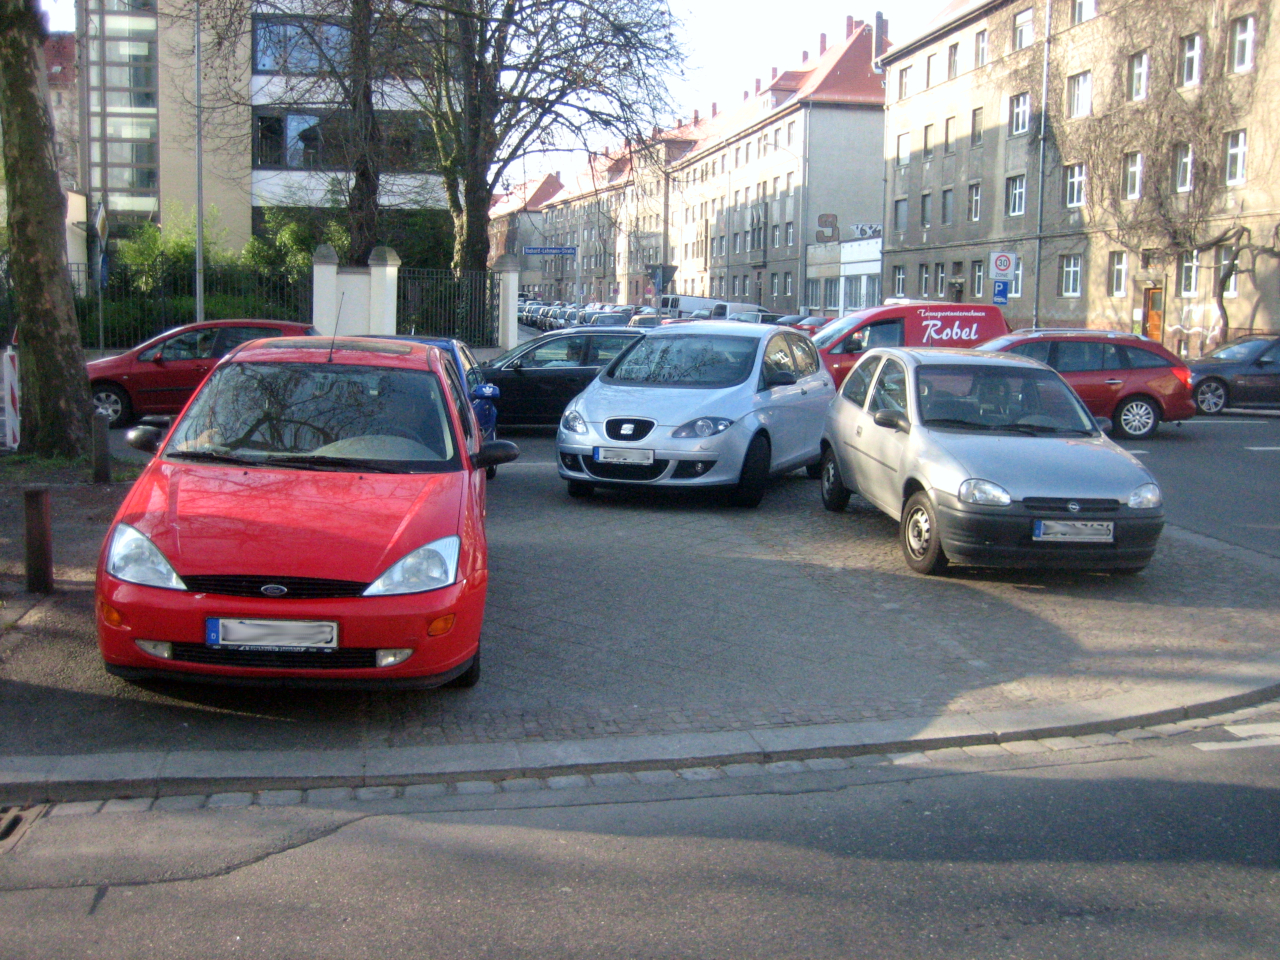 Zugeparkter Gehweg an der Richard-Lehmann-Straße